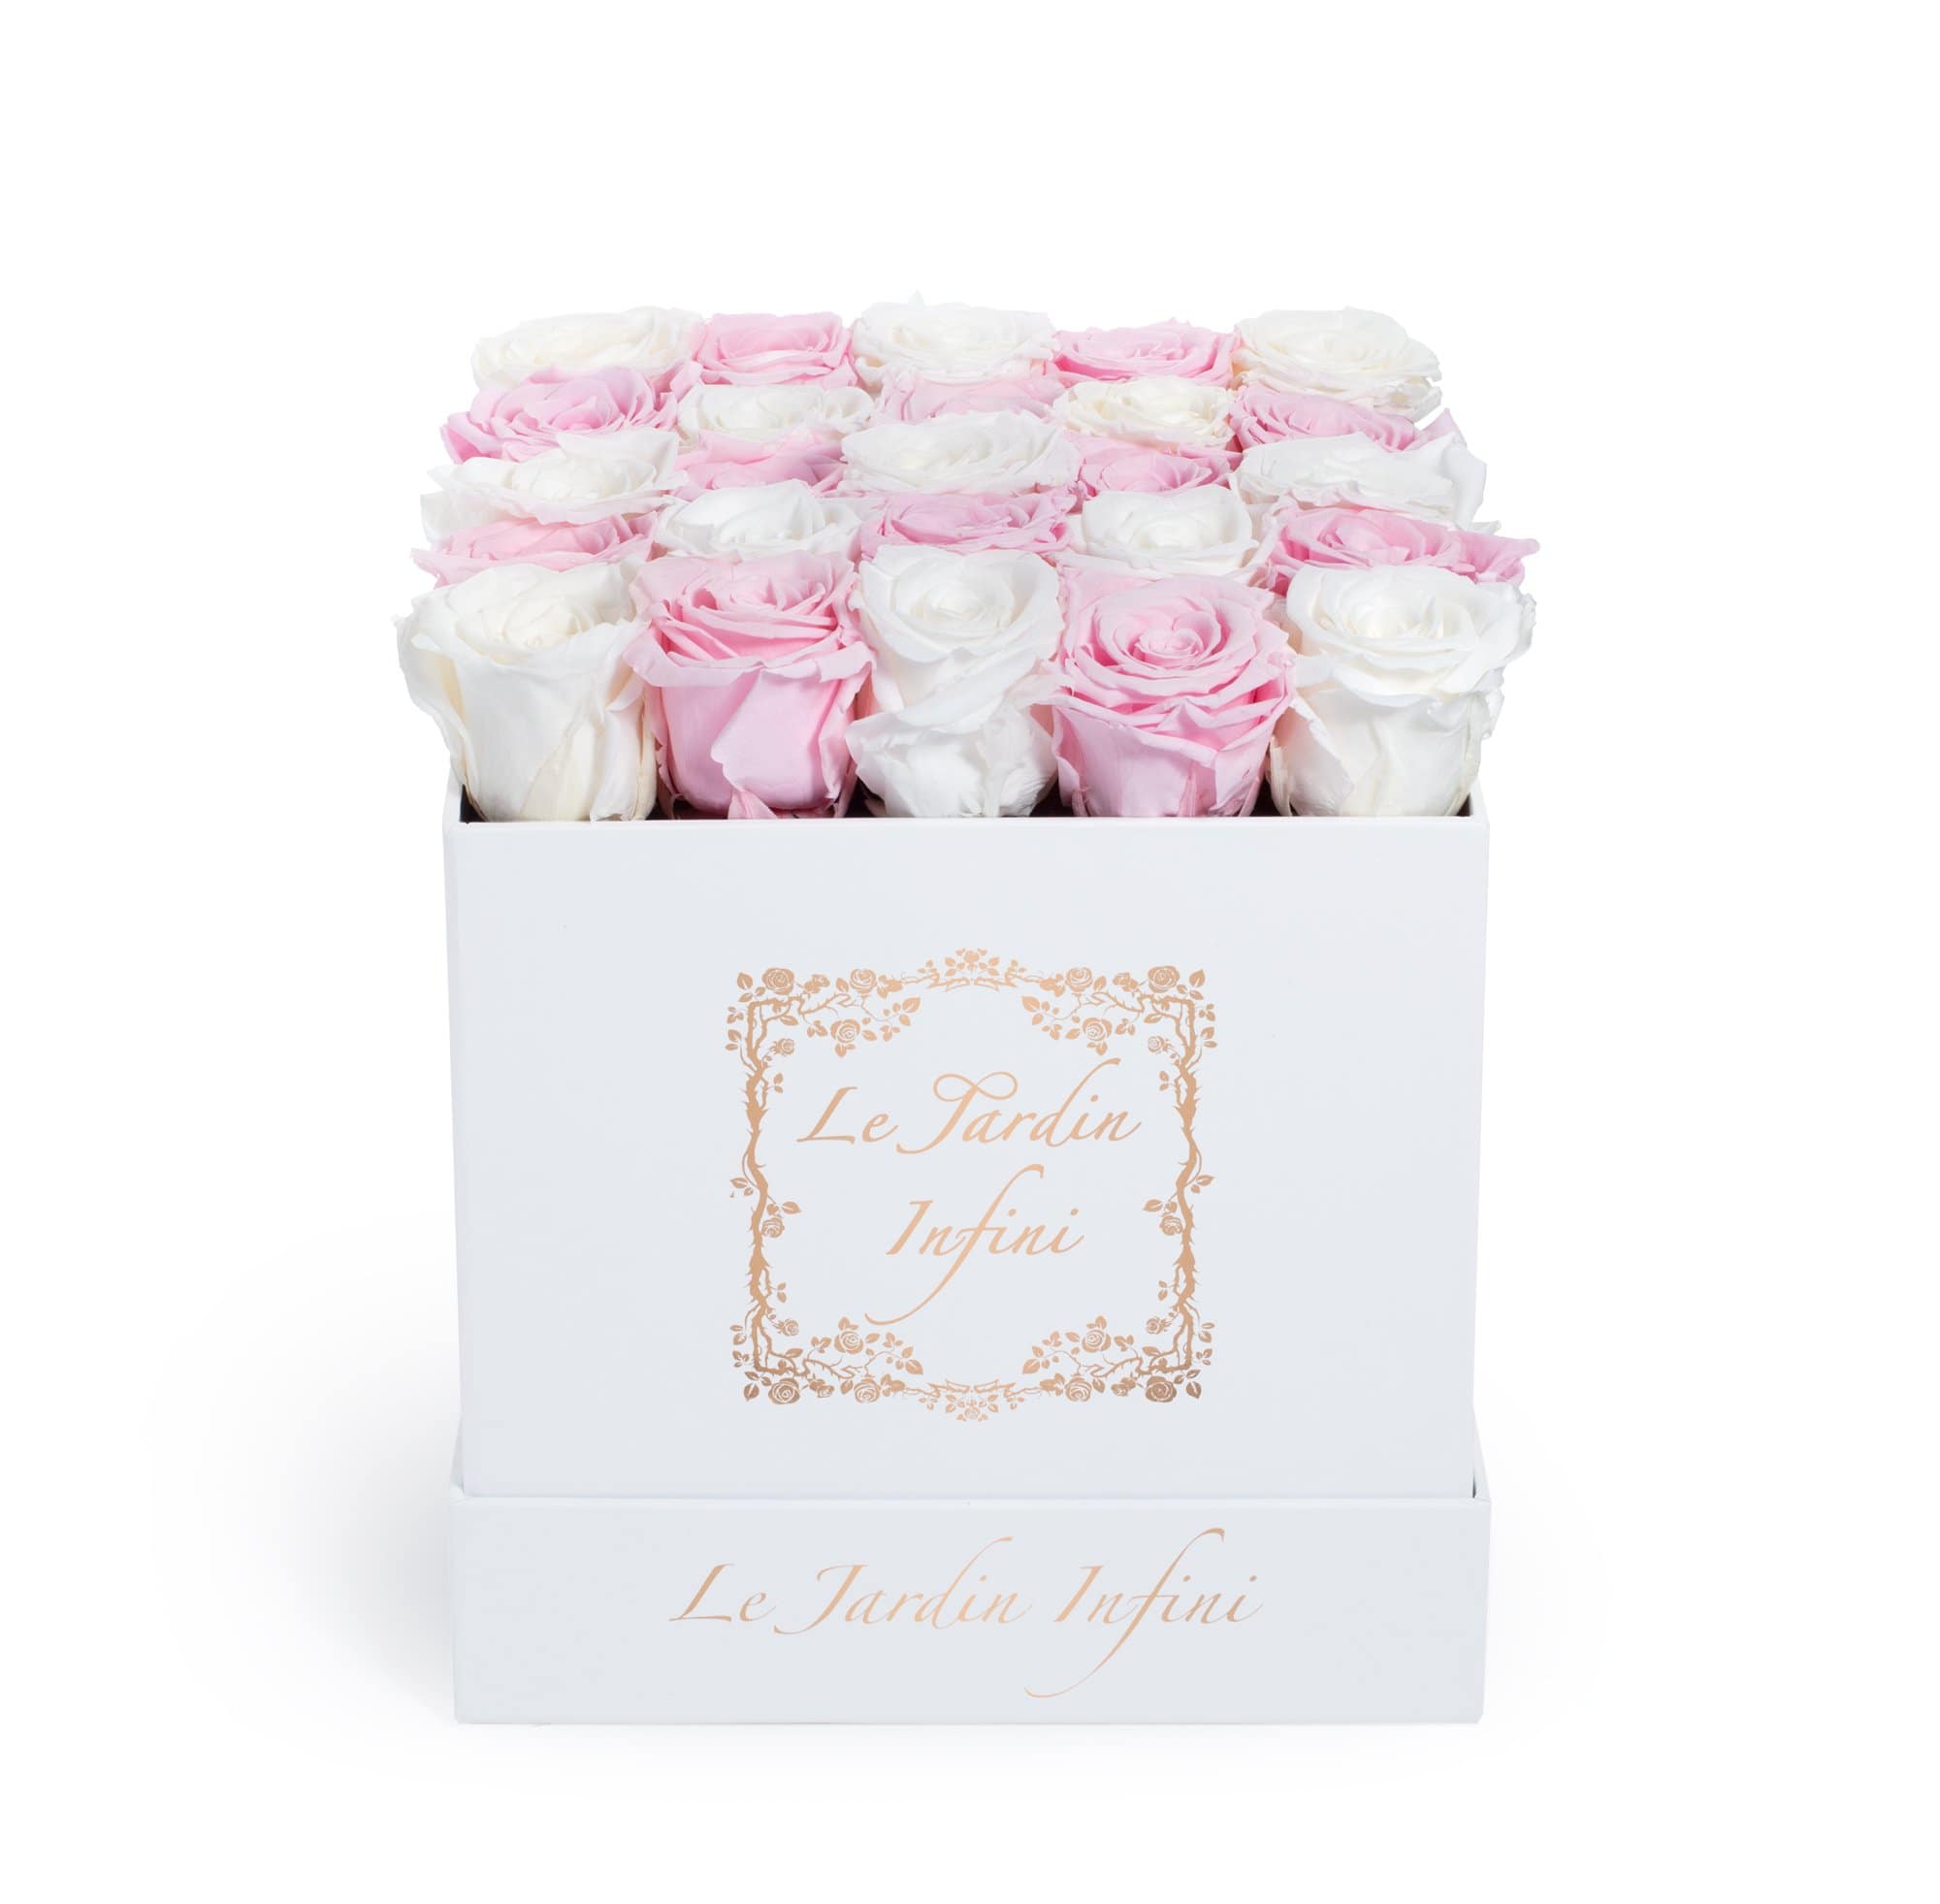 Checker White & Soft Pink Preserved Roses - Medium Square White Box